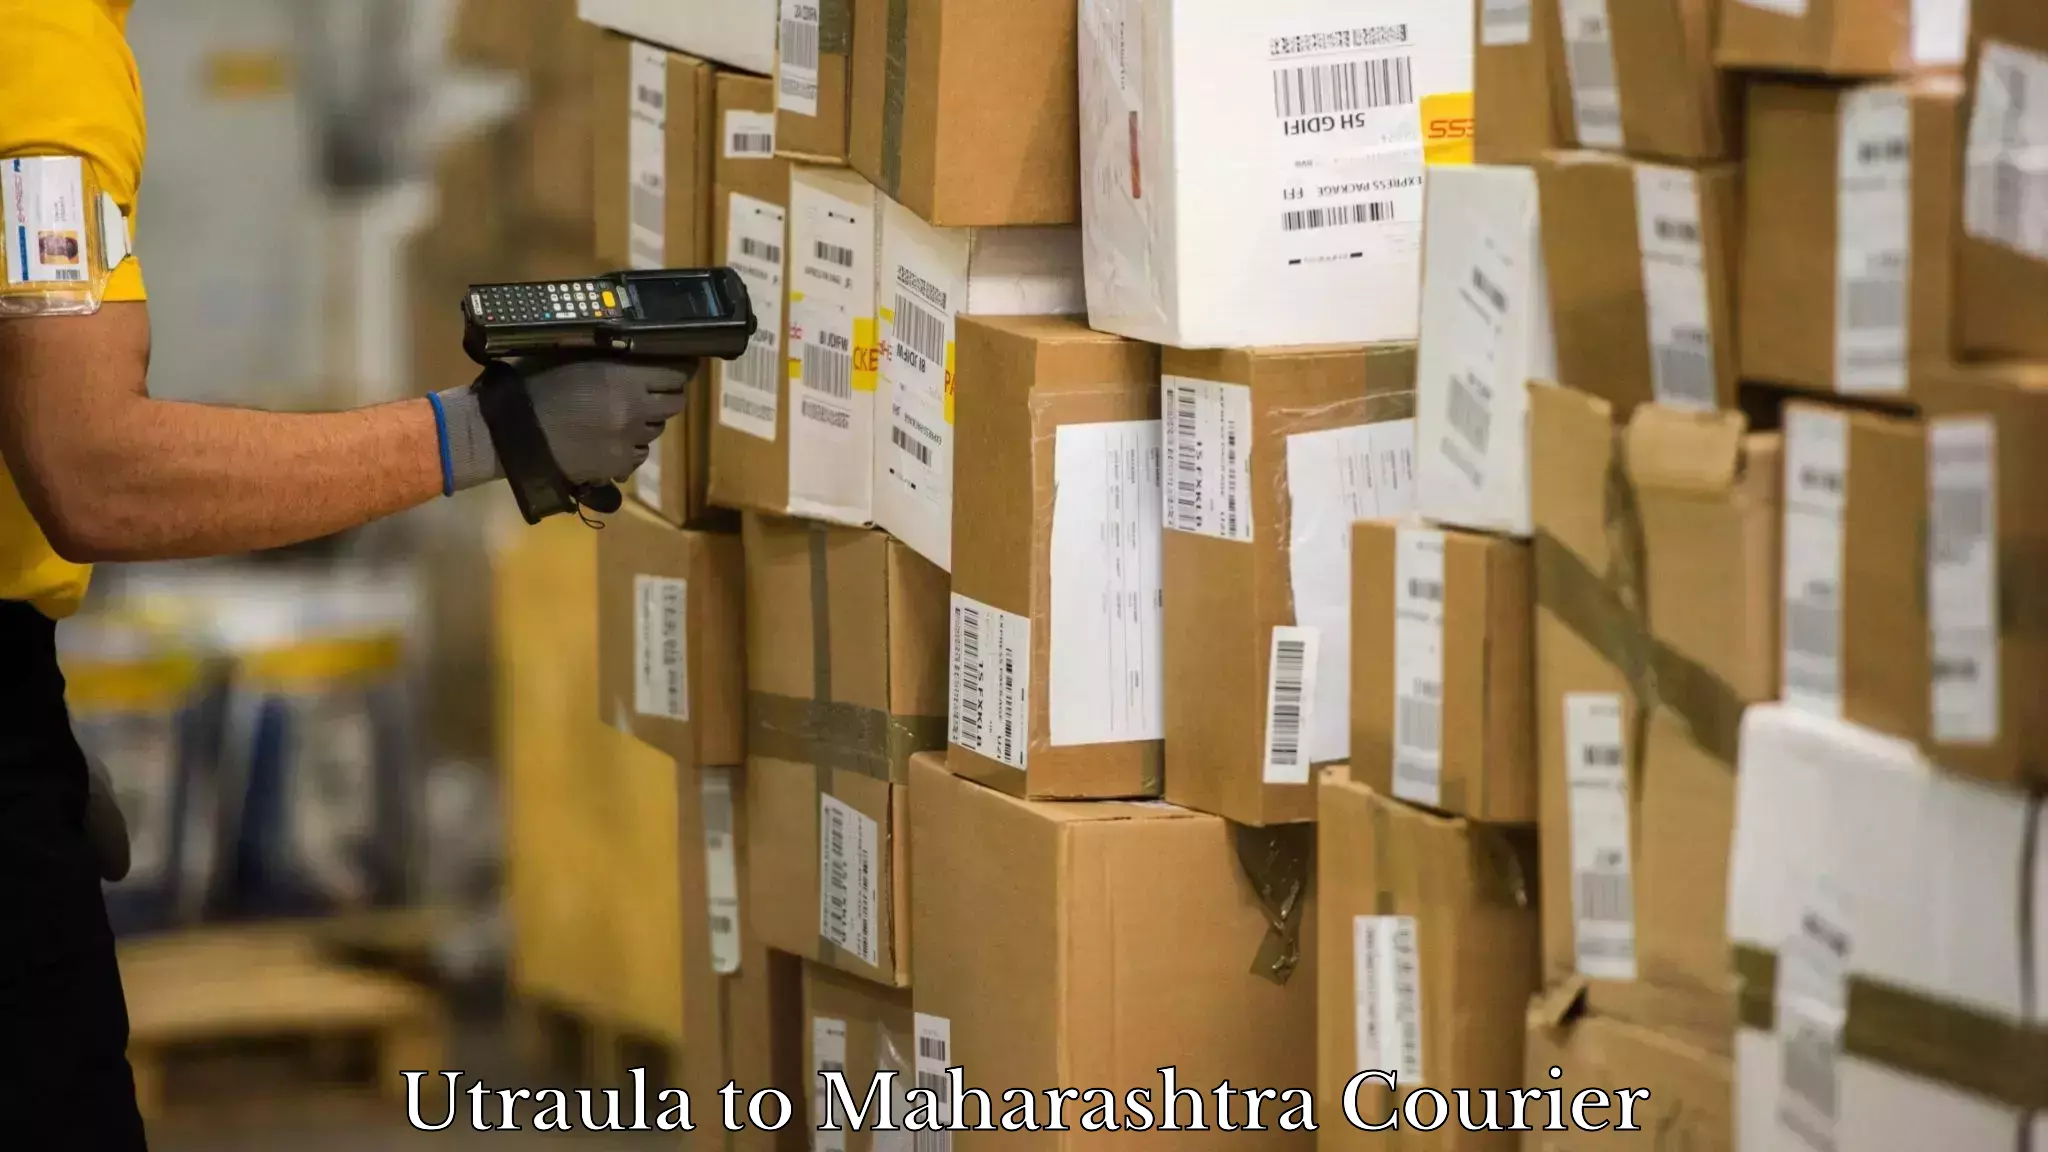 Courier service efficiency Utraula to Maharashtra